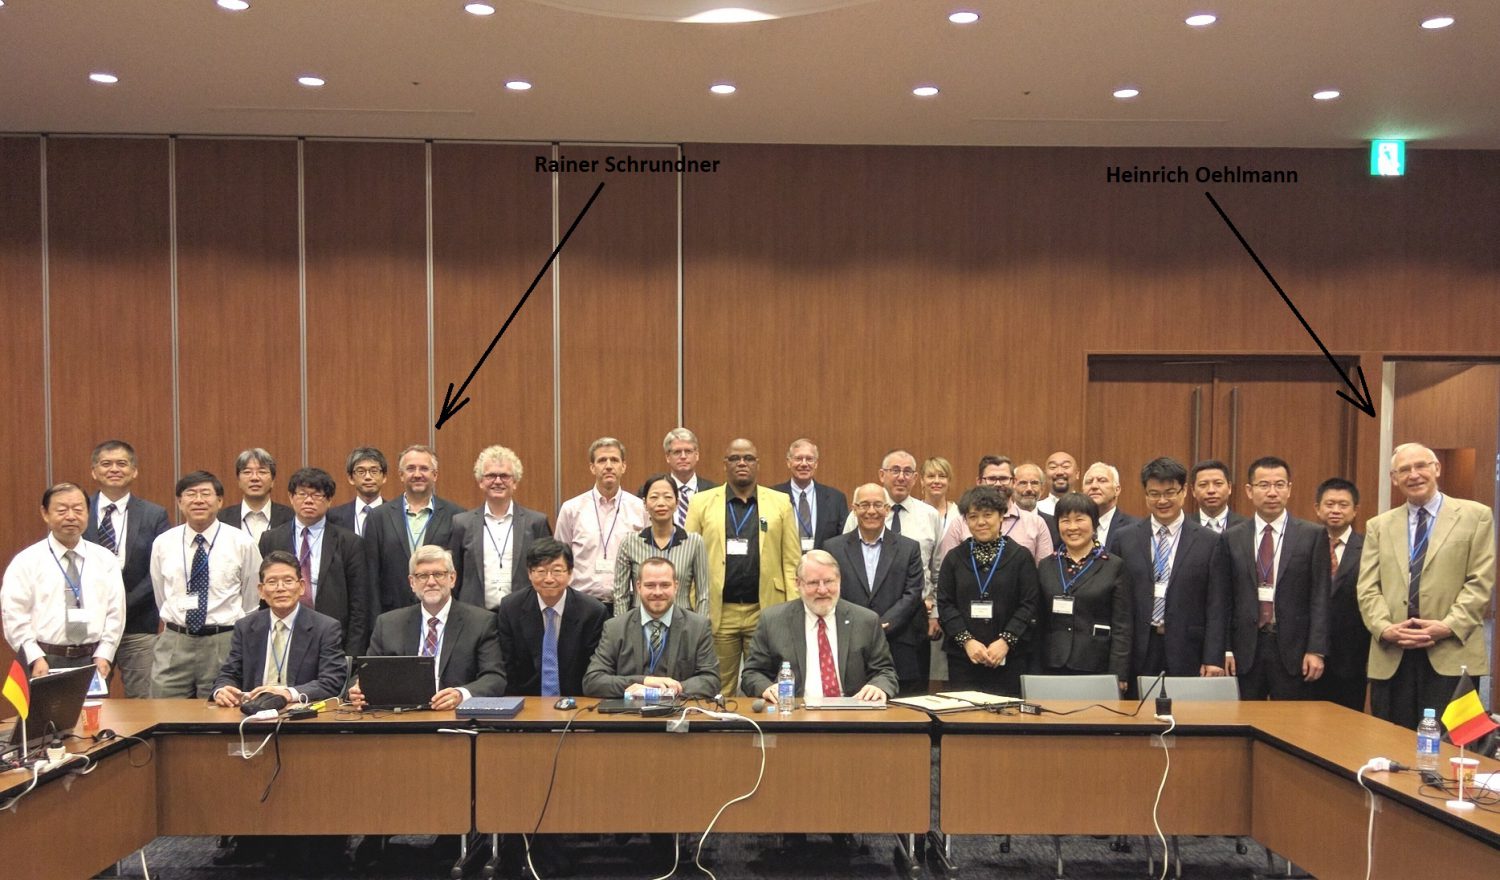 Gruppenphoto ISO IEC JTC1 SC31 - 2016 - mit der deutschen Delegation bestehend aus Heinrich Oehlmann und Rainer Schrundner